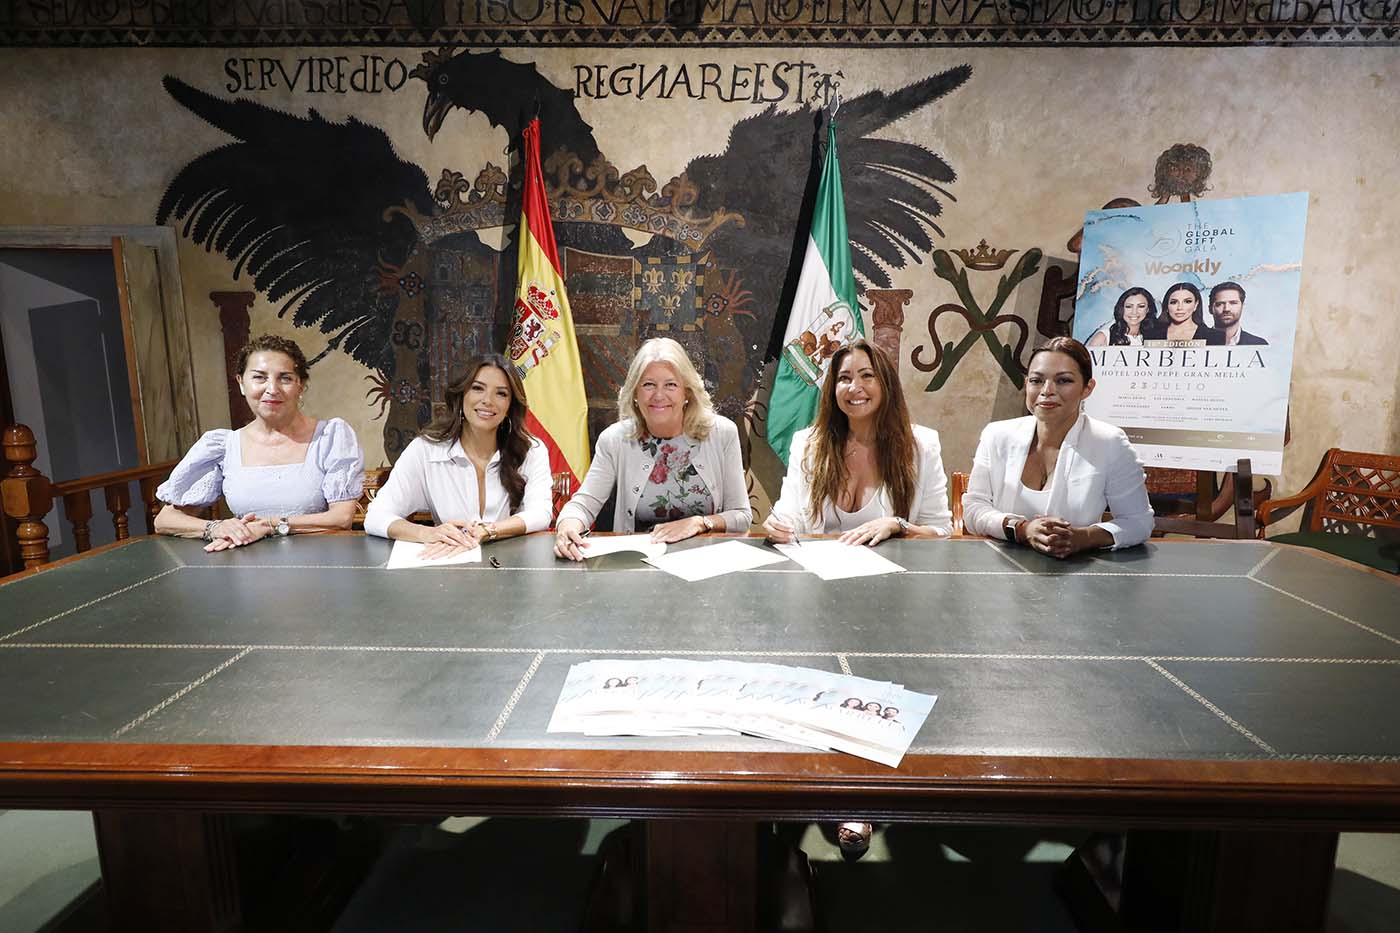 La alcaldesa firma un convenio con la Fundación Global Gift para respaldar su trabajo social en la ciudad y destaca la labor como embajadoras de Marbella de Eva Longoria y María Bravo